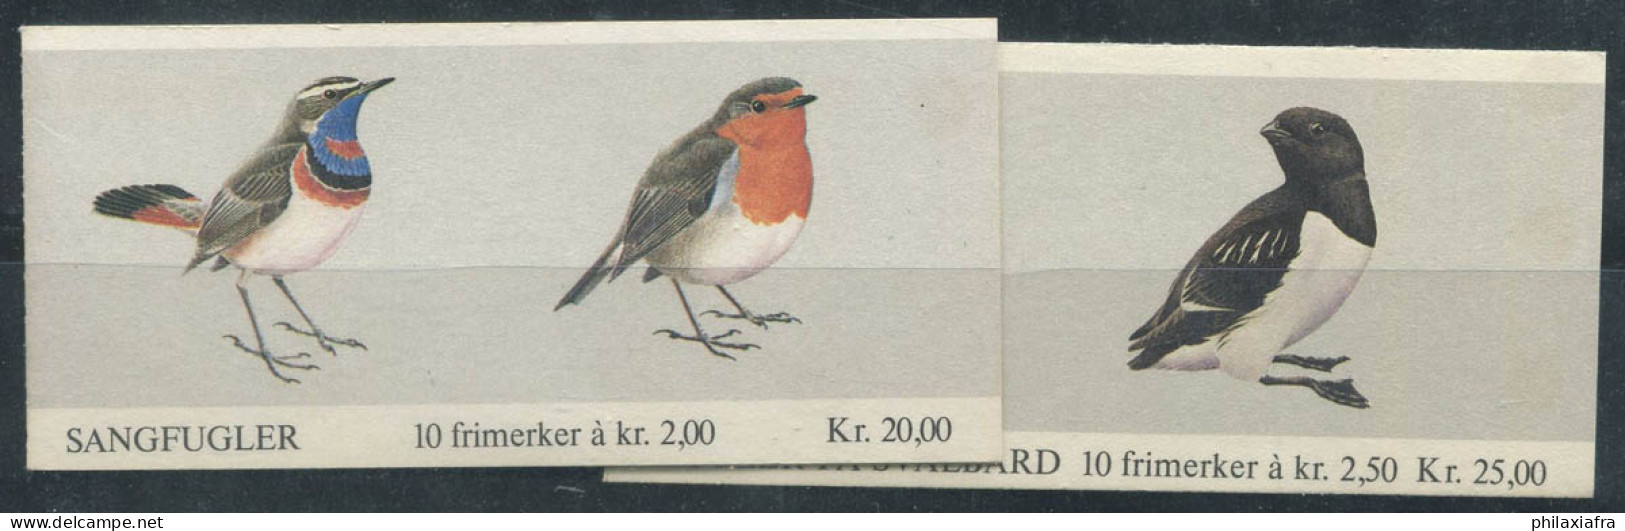 Norvège 1982-83 Mi. 860-61,883-84 Carnet 100% Neuf ** Oiseaux - Carnets